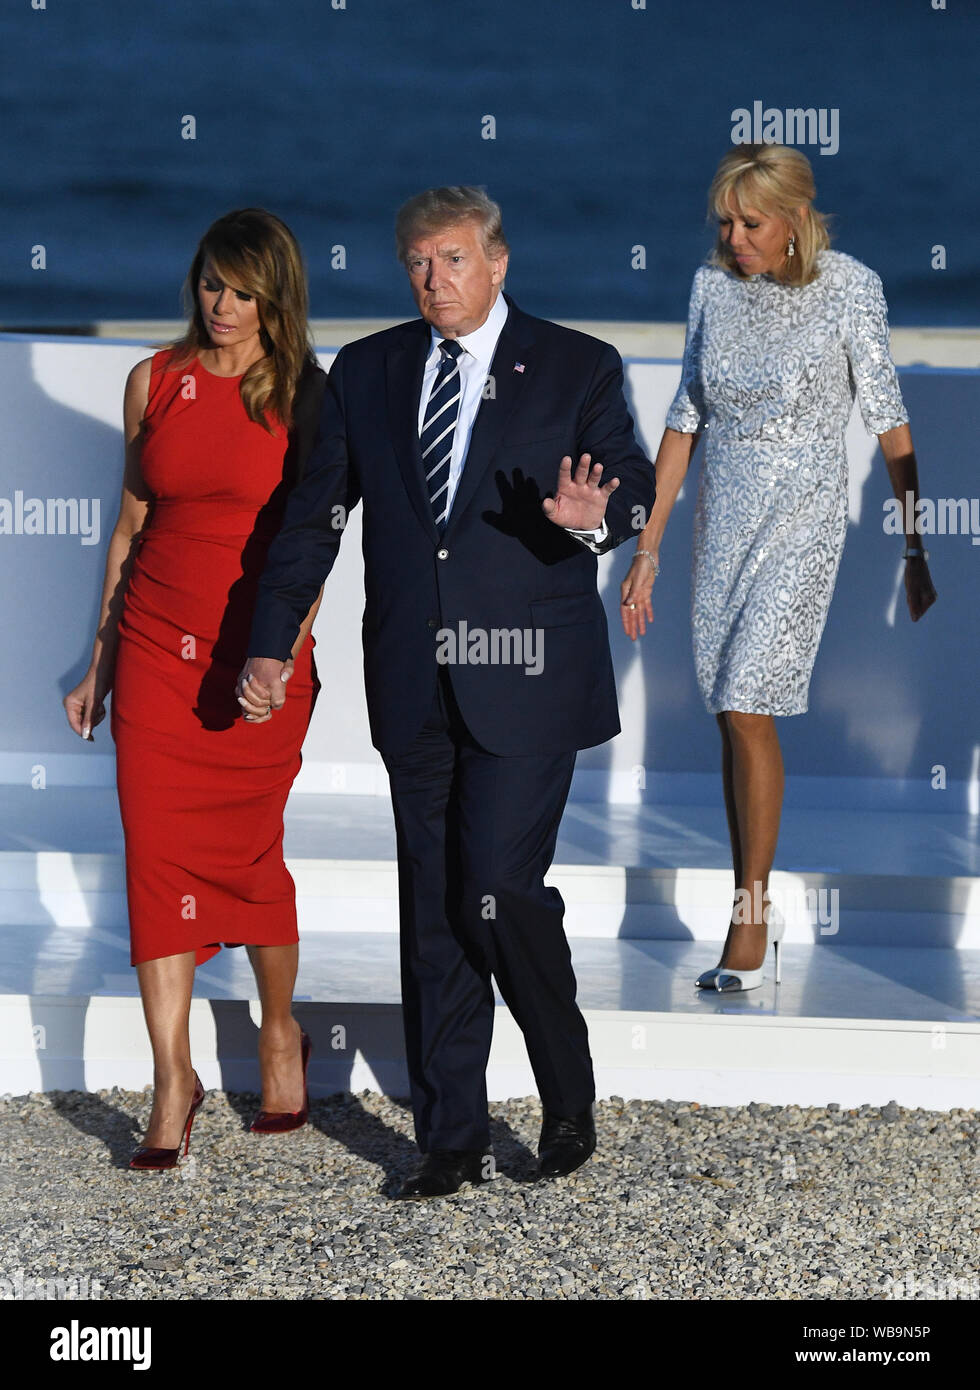 Melania Trump, gauche, le Président Donald Trump, Brigitte Macron, le président français Emmanuel Macron inscrivez-vous d'autres dirigeants du monde pour la photo de famille au sommet du G7 à Biarritz, France. Banque D'Images